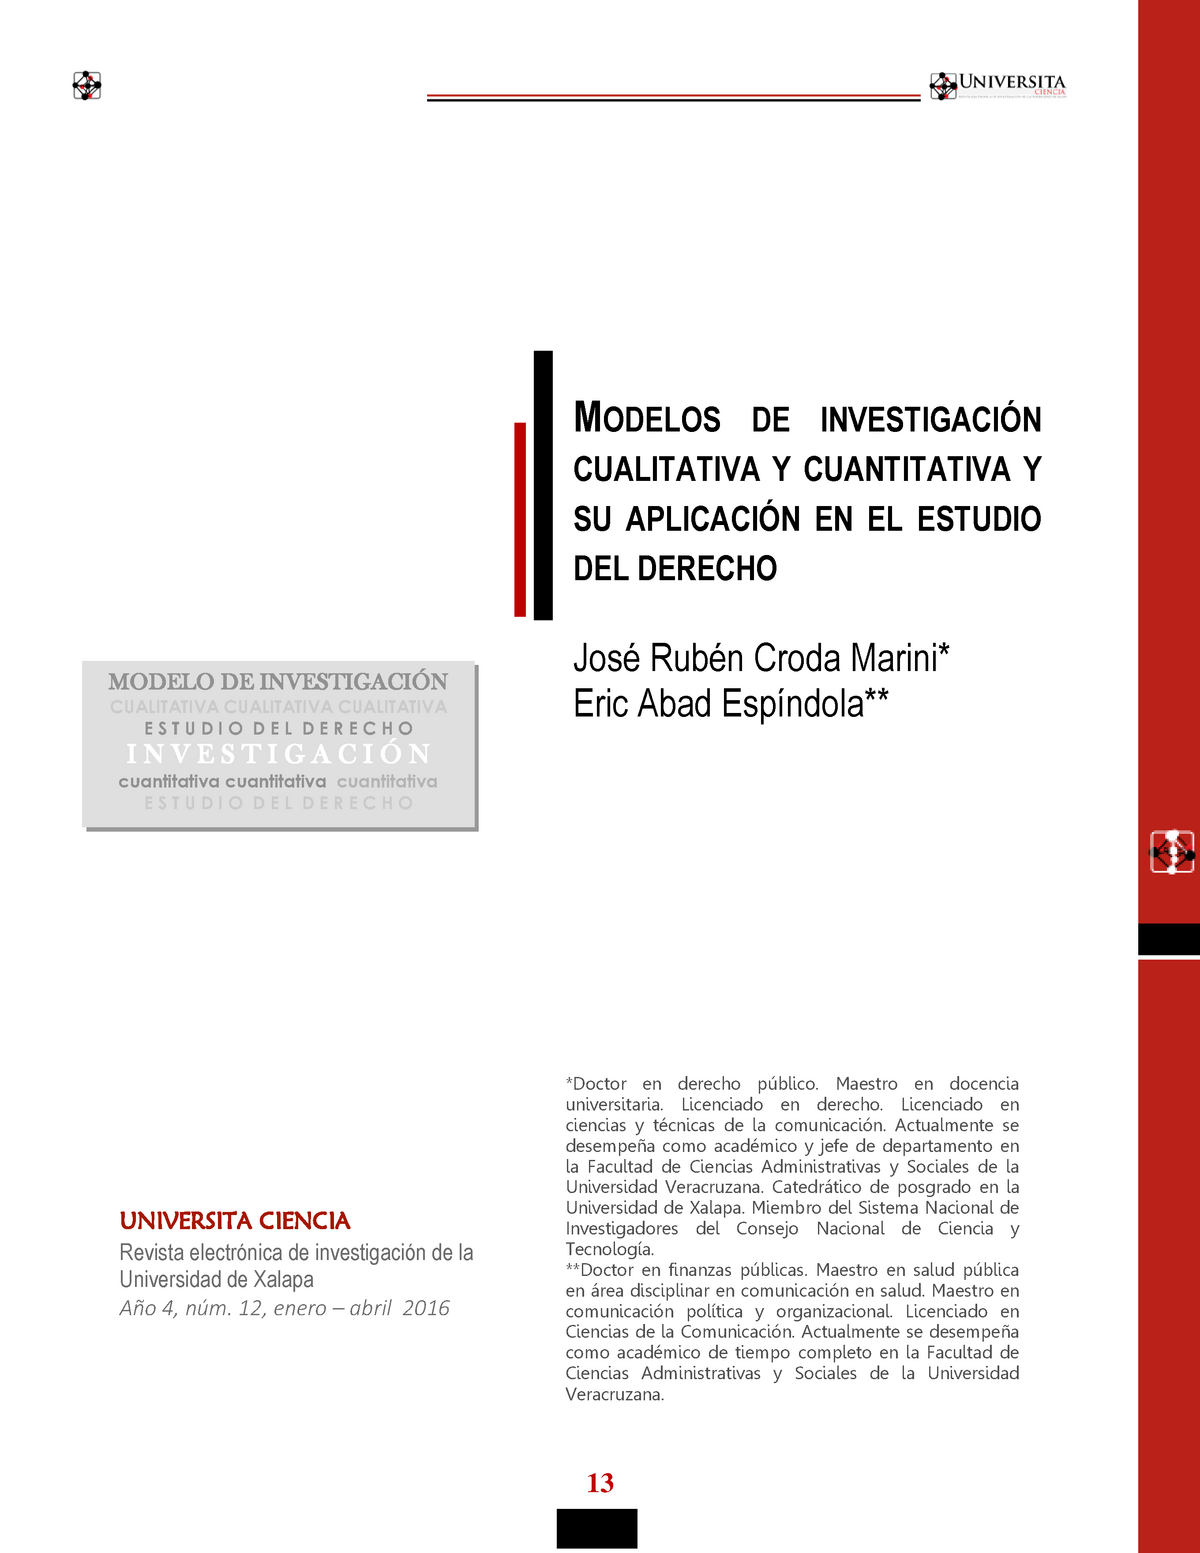 Modelos de investigación cualitativa y cuantitativa - MODELO DE INVESTIGACIÓN  CUALITATIVA - Studocu